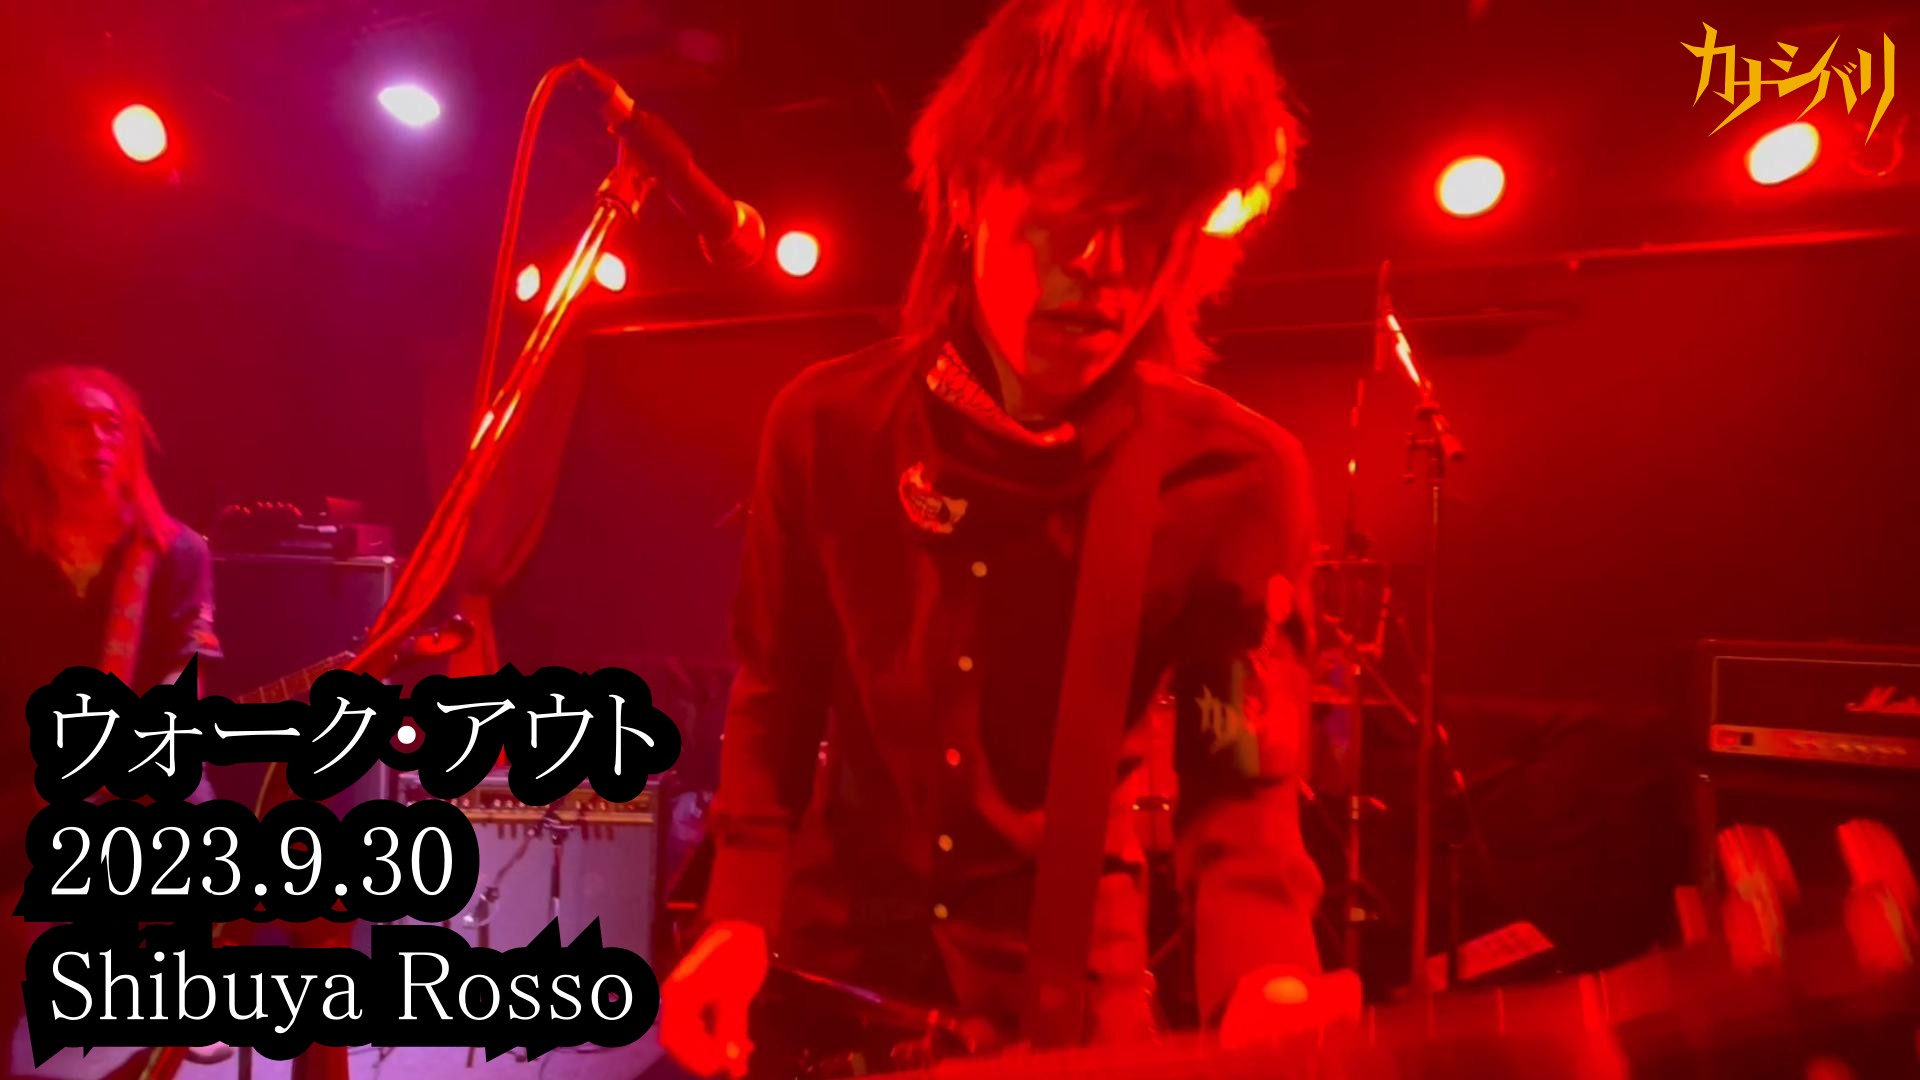 ウォーク・アウト - Live at Shibuya Rosso / 2023.9.30